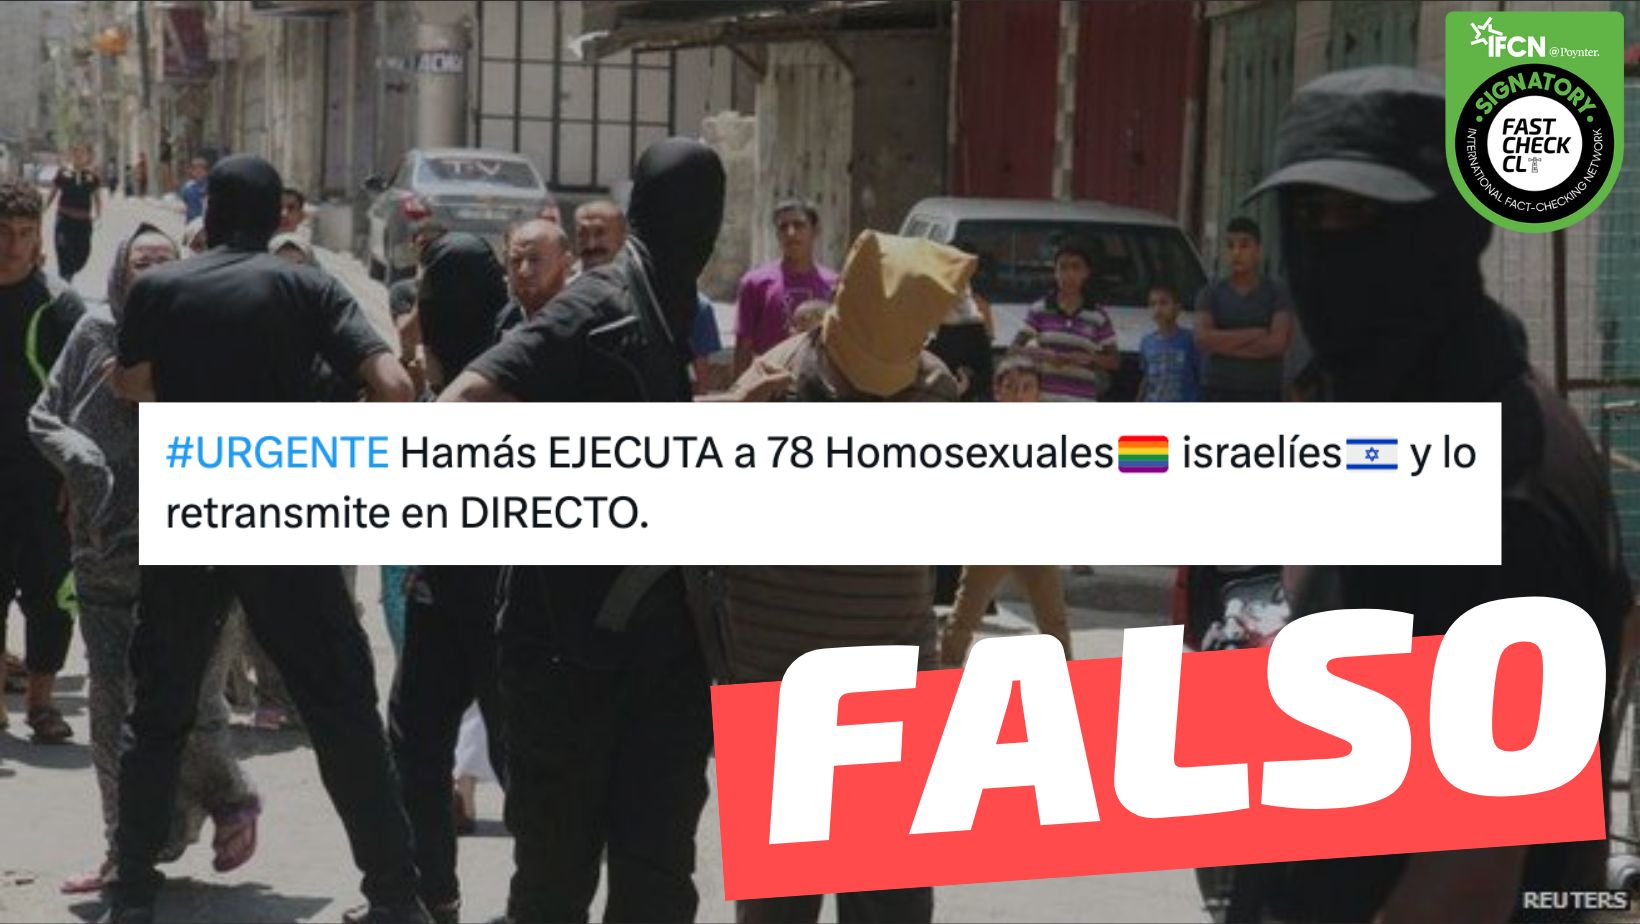 You are currently viewing (Imagen) “Hamás ejecuta a 78 homosexuales israelíes y lo retransmite en directo”: #Falso